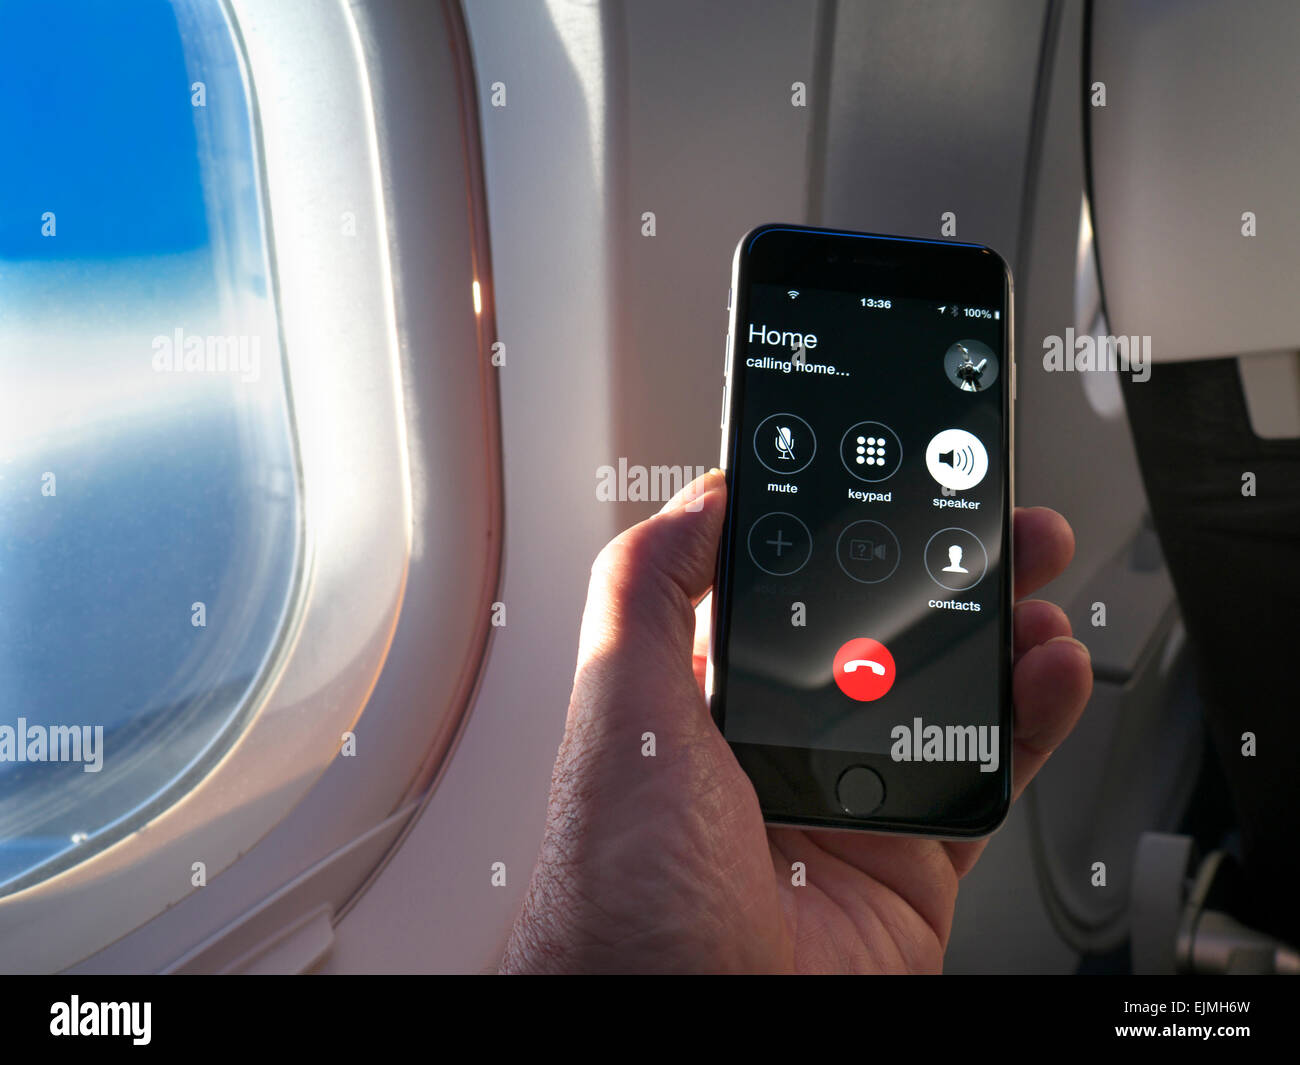 Smartphone iPhone portable avec écran d'appel « home » en vol, avec aile de fenêtre de cabine et ciel bleu derrière Banque D'Images